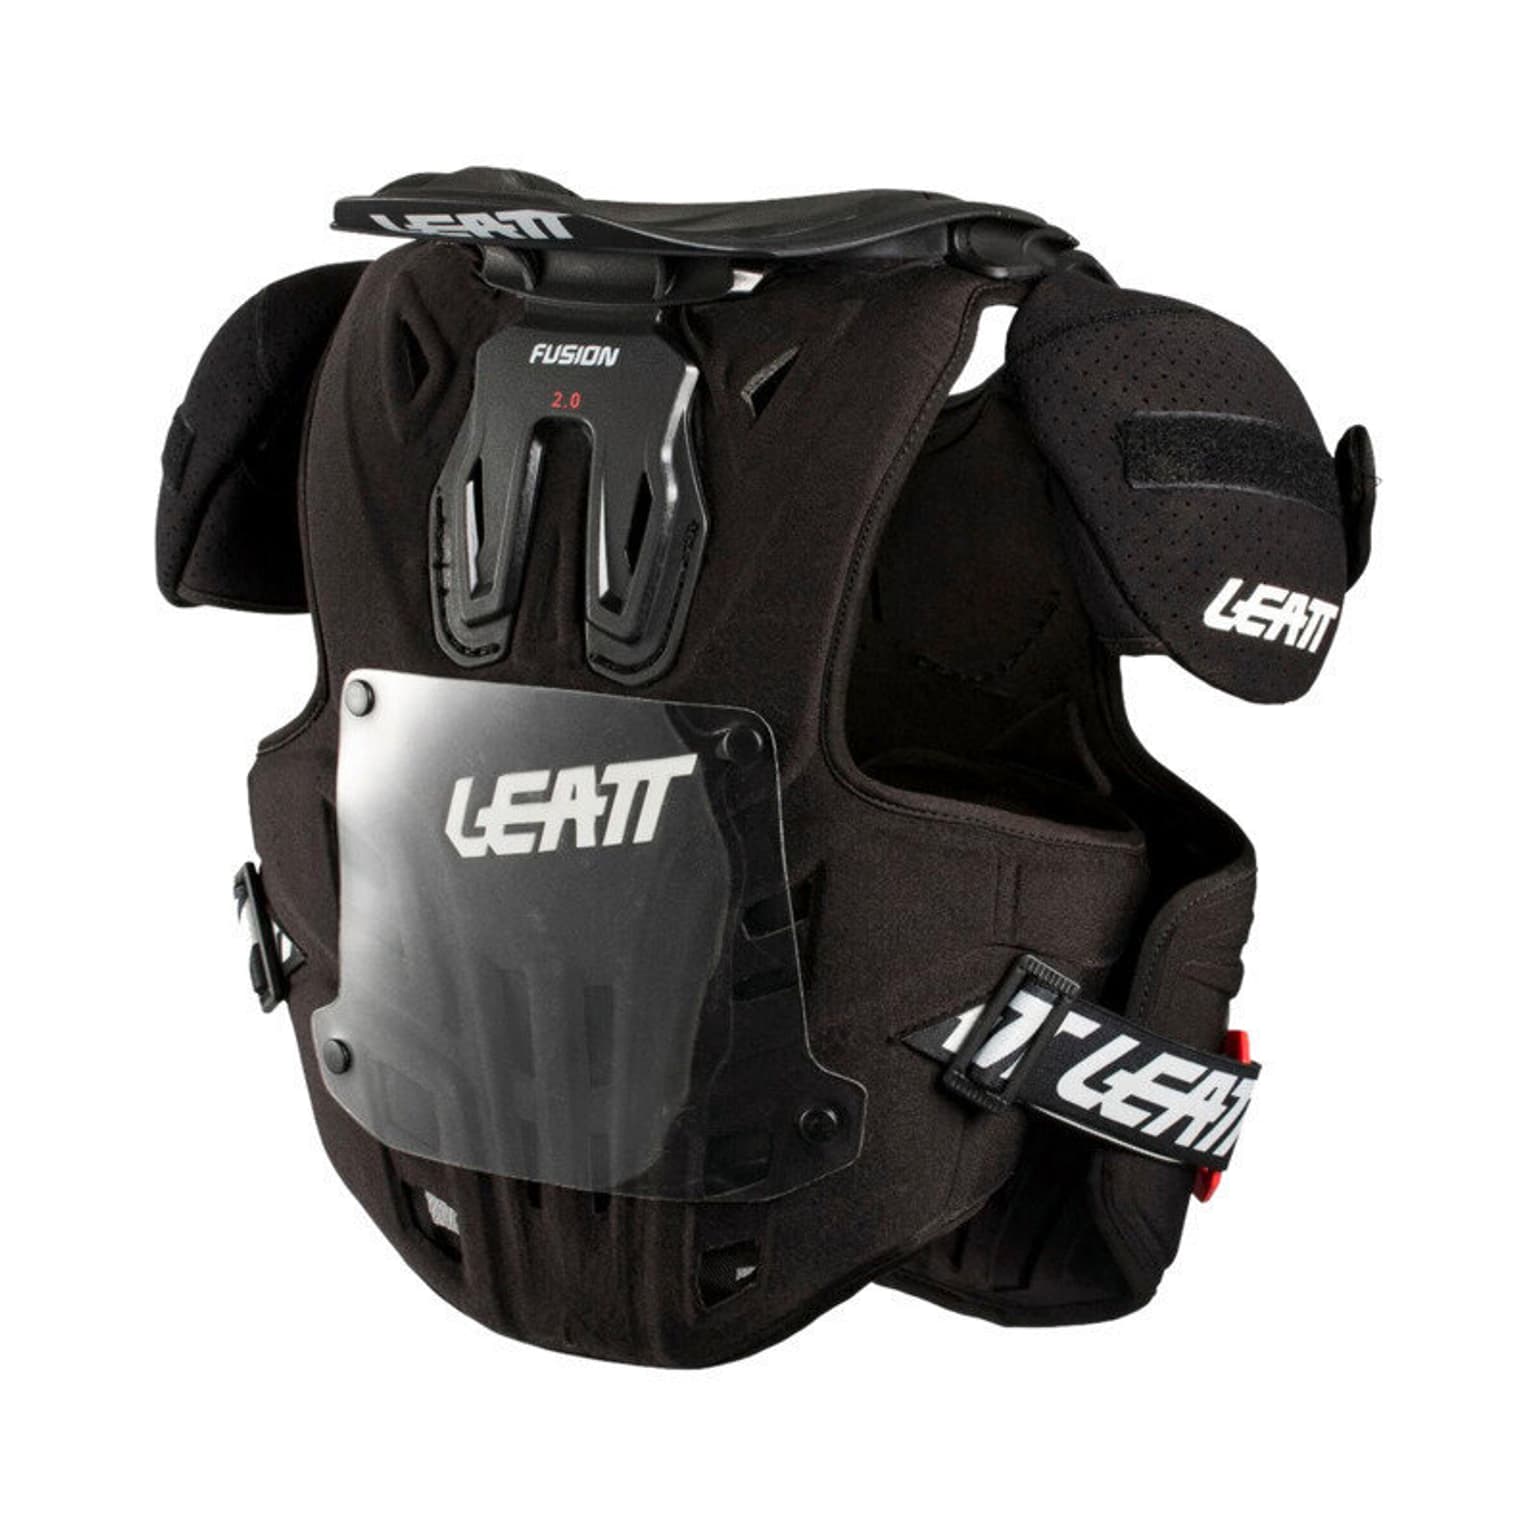 Leatt Leatt Fusion Vest 2.0 Brace Protection dorsale noir 3